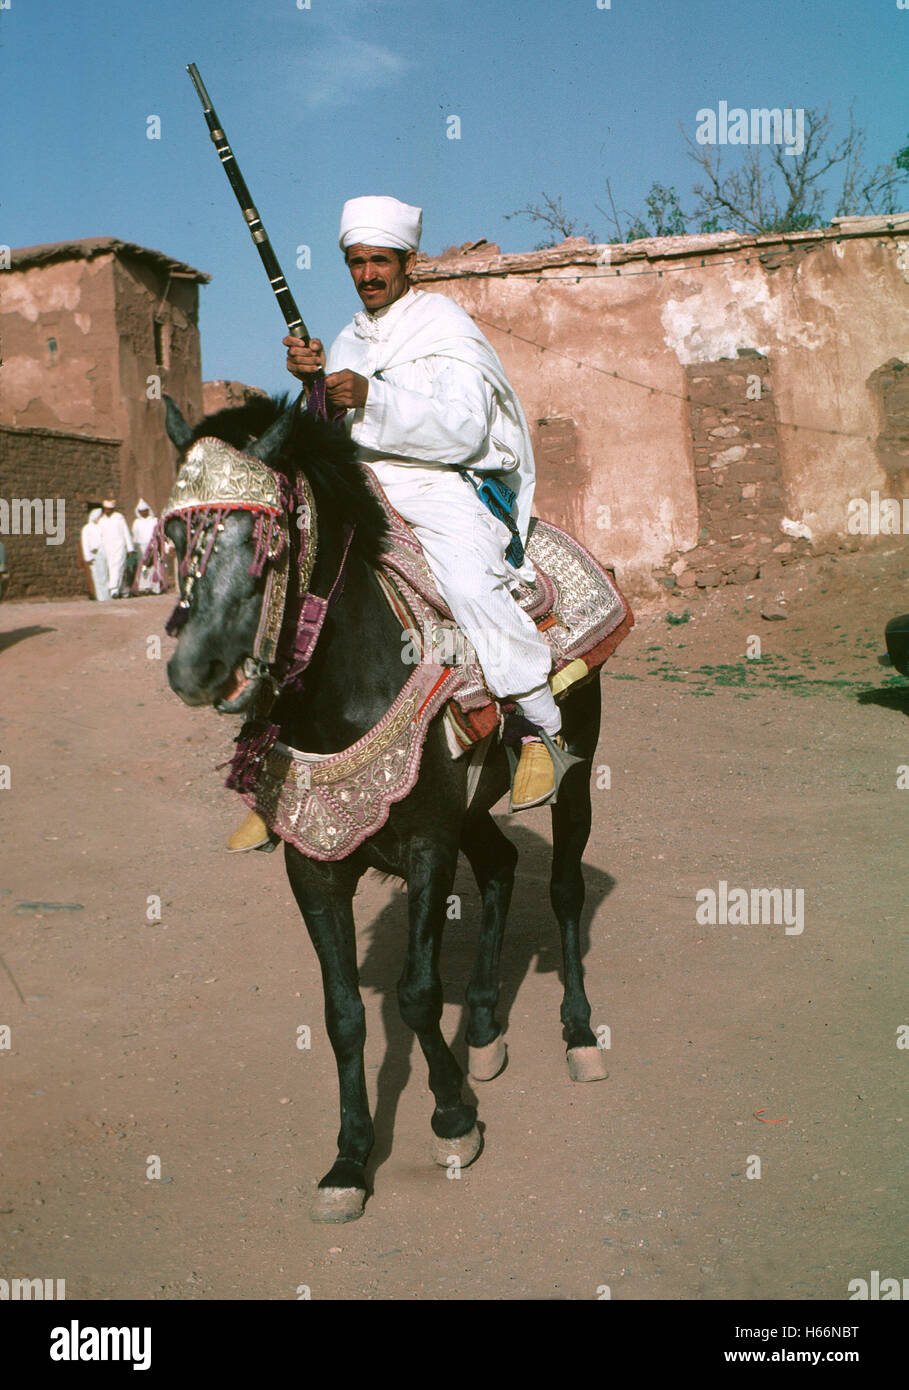 Tribesman sur un cheval décoré avec des vêtements traditionnels, Maroc Avril 1997 Banque D'Images